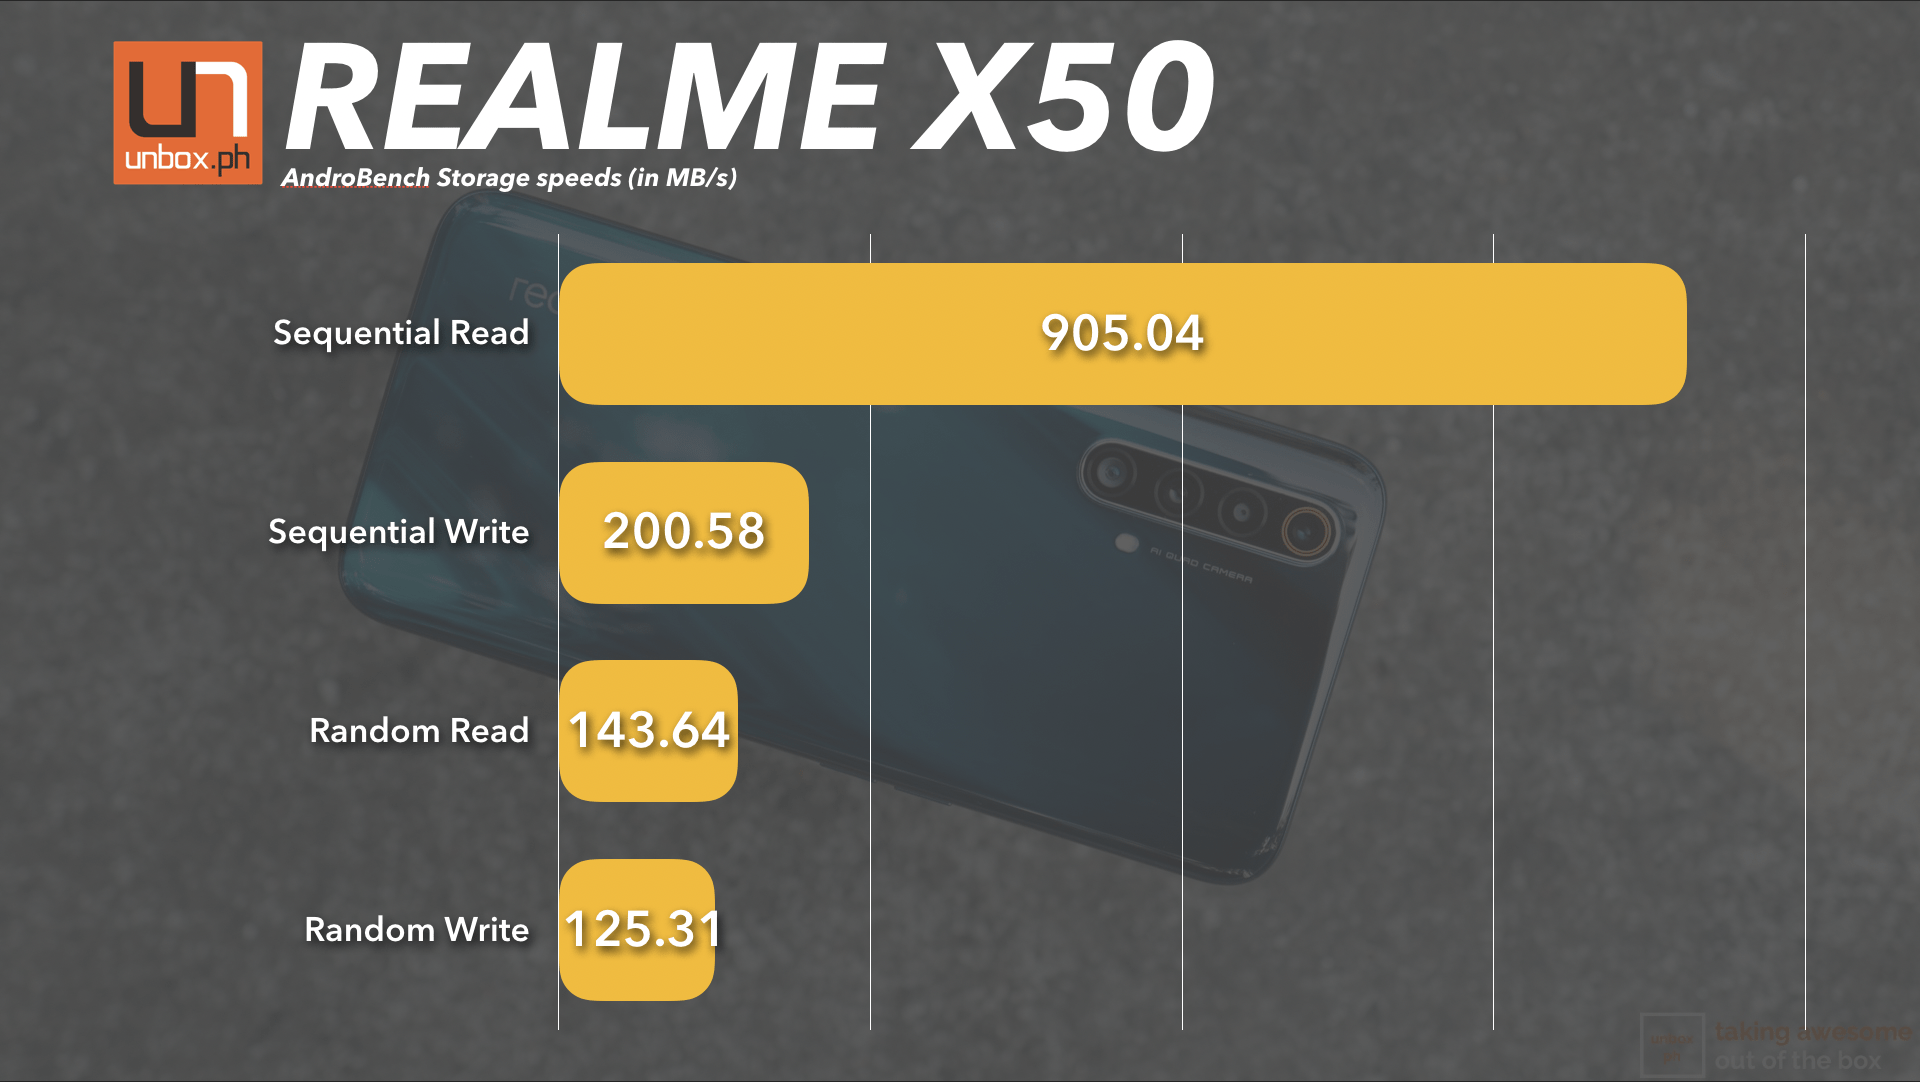 RealmeX50 Androbench Storage Speeds